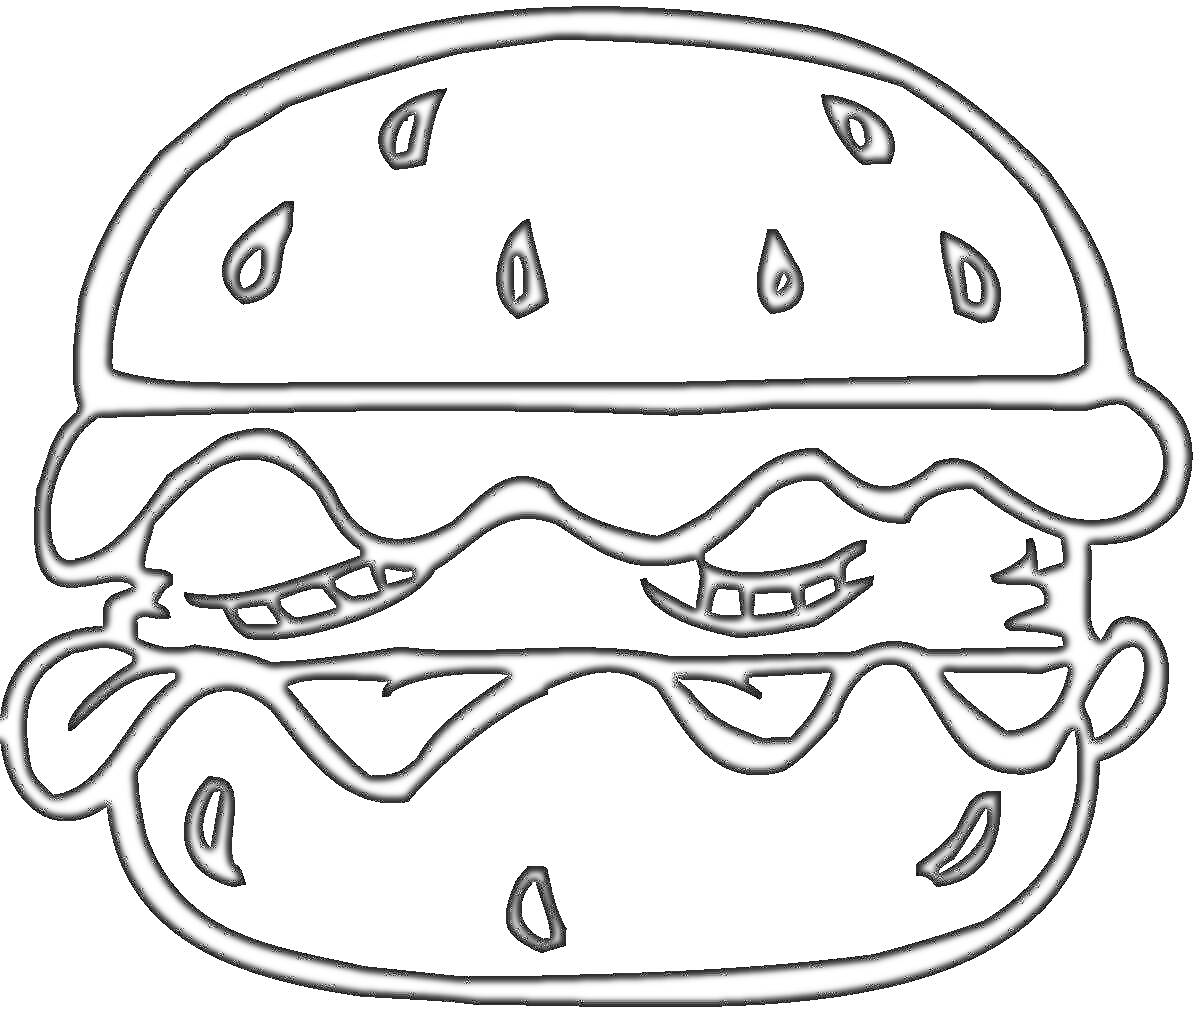 Раскраска Раскраска с бургером: булочка с кунжутом, листья салата, мясная котлета, нижняя булочка